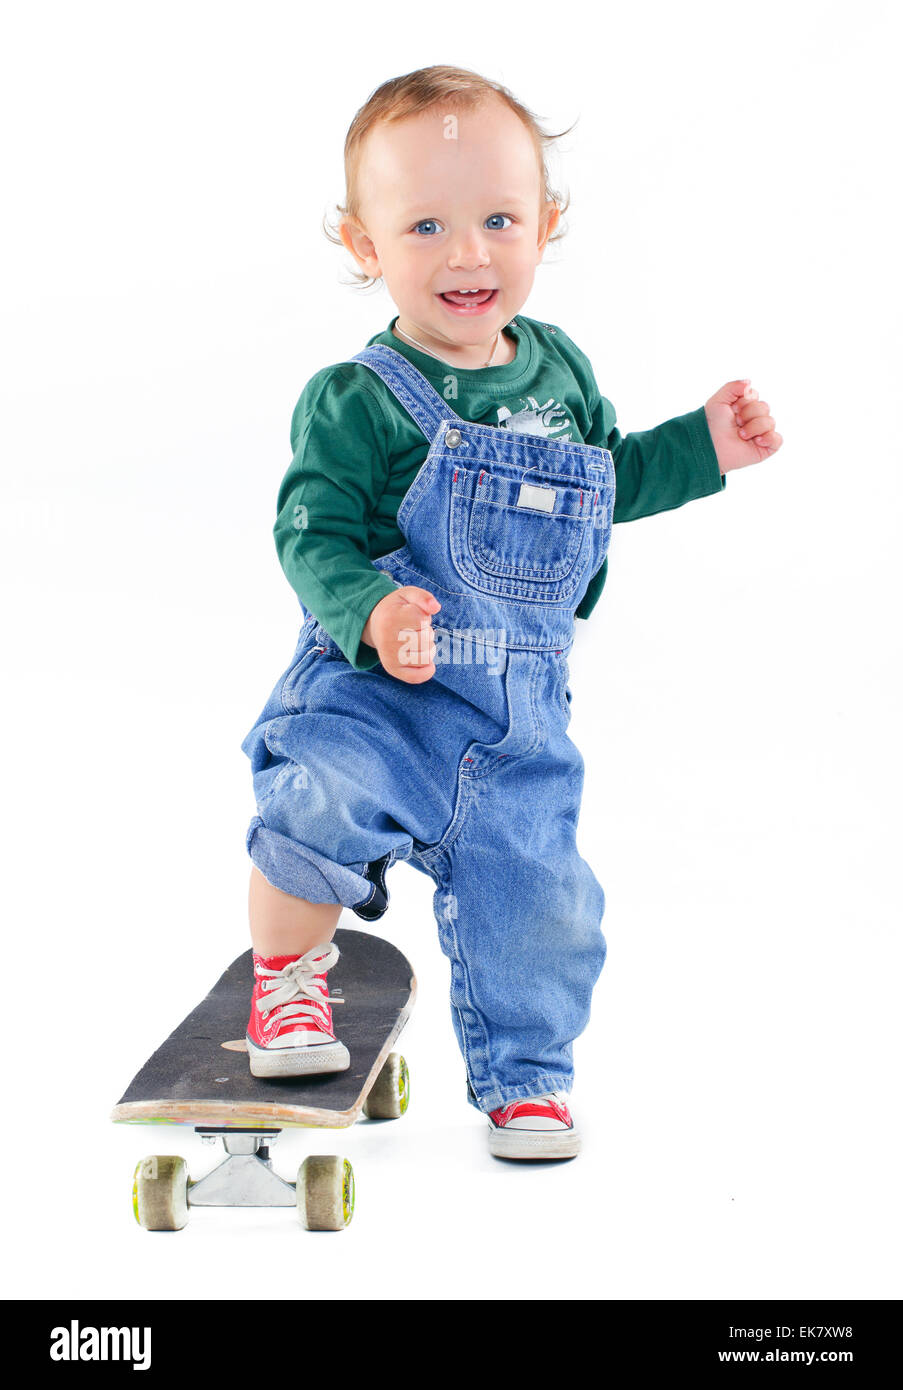 Little boy on a skateboard Stock Photo - Alamy